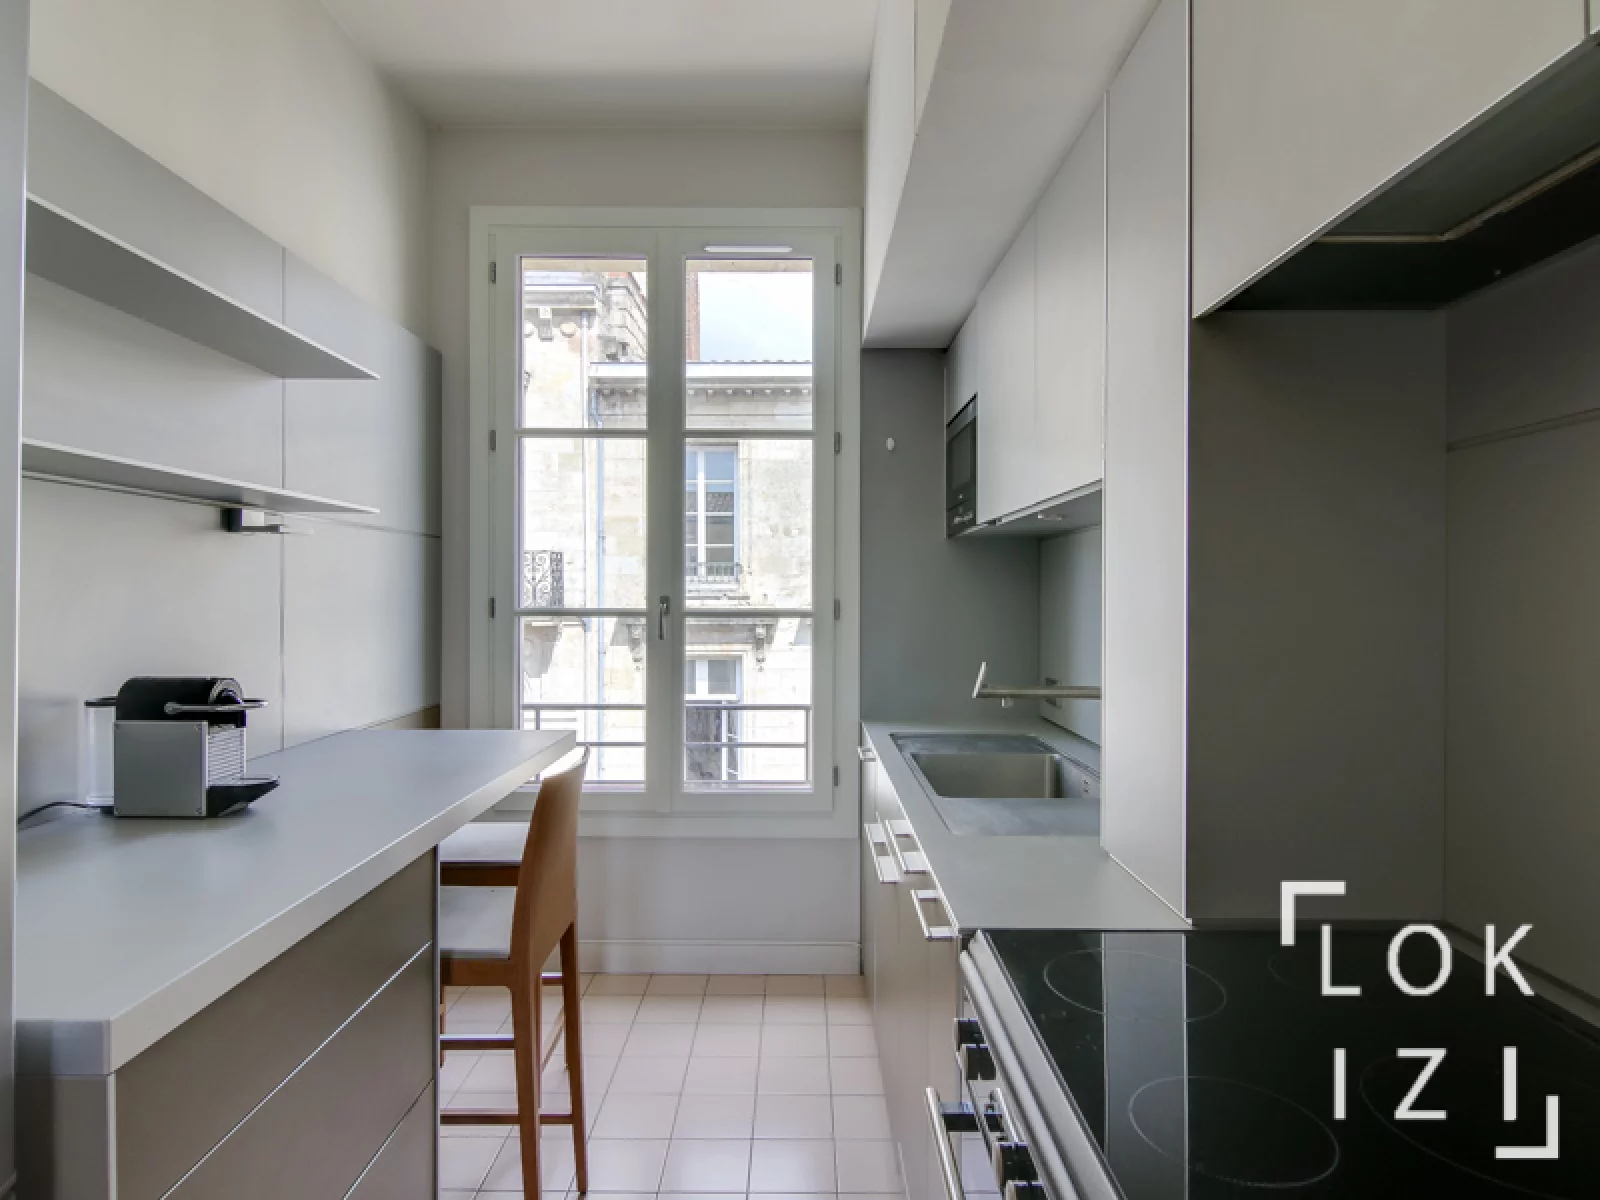 Location appartement meubl 70m (Bordeaux centre - Triangle d'or)